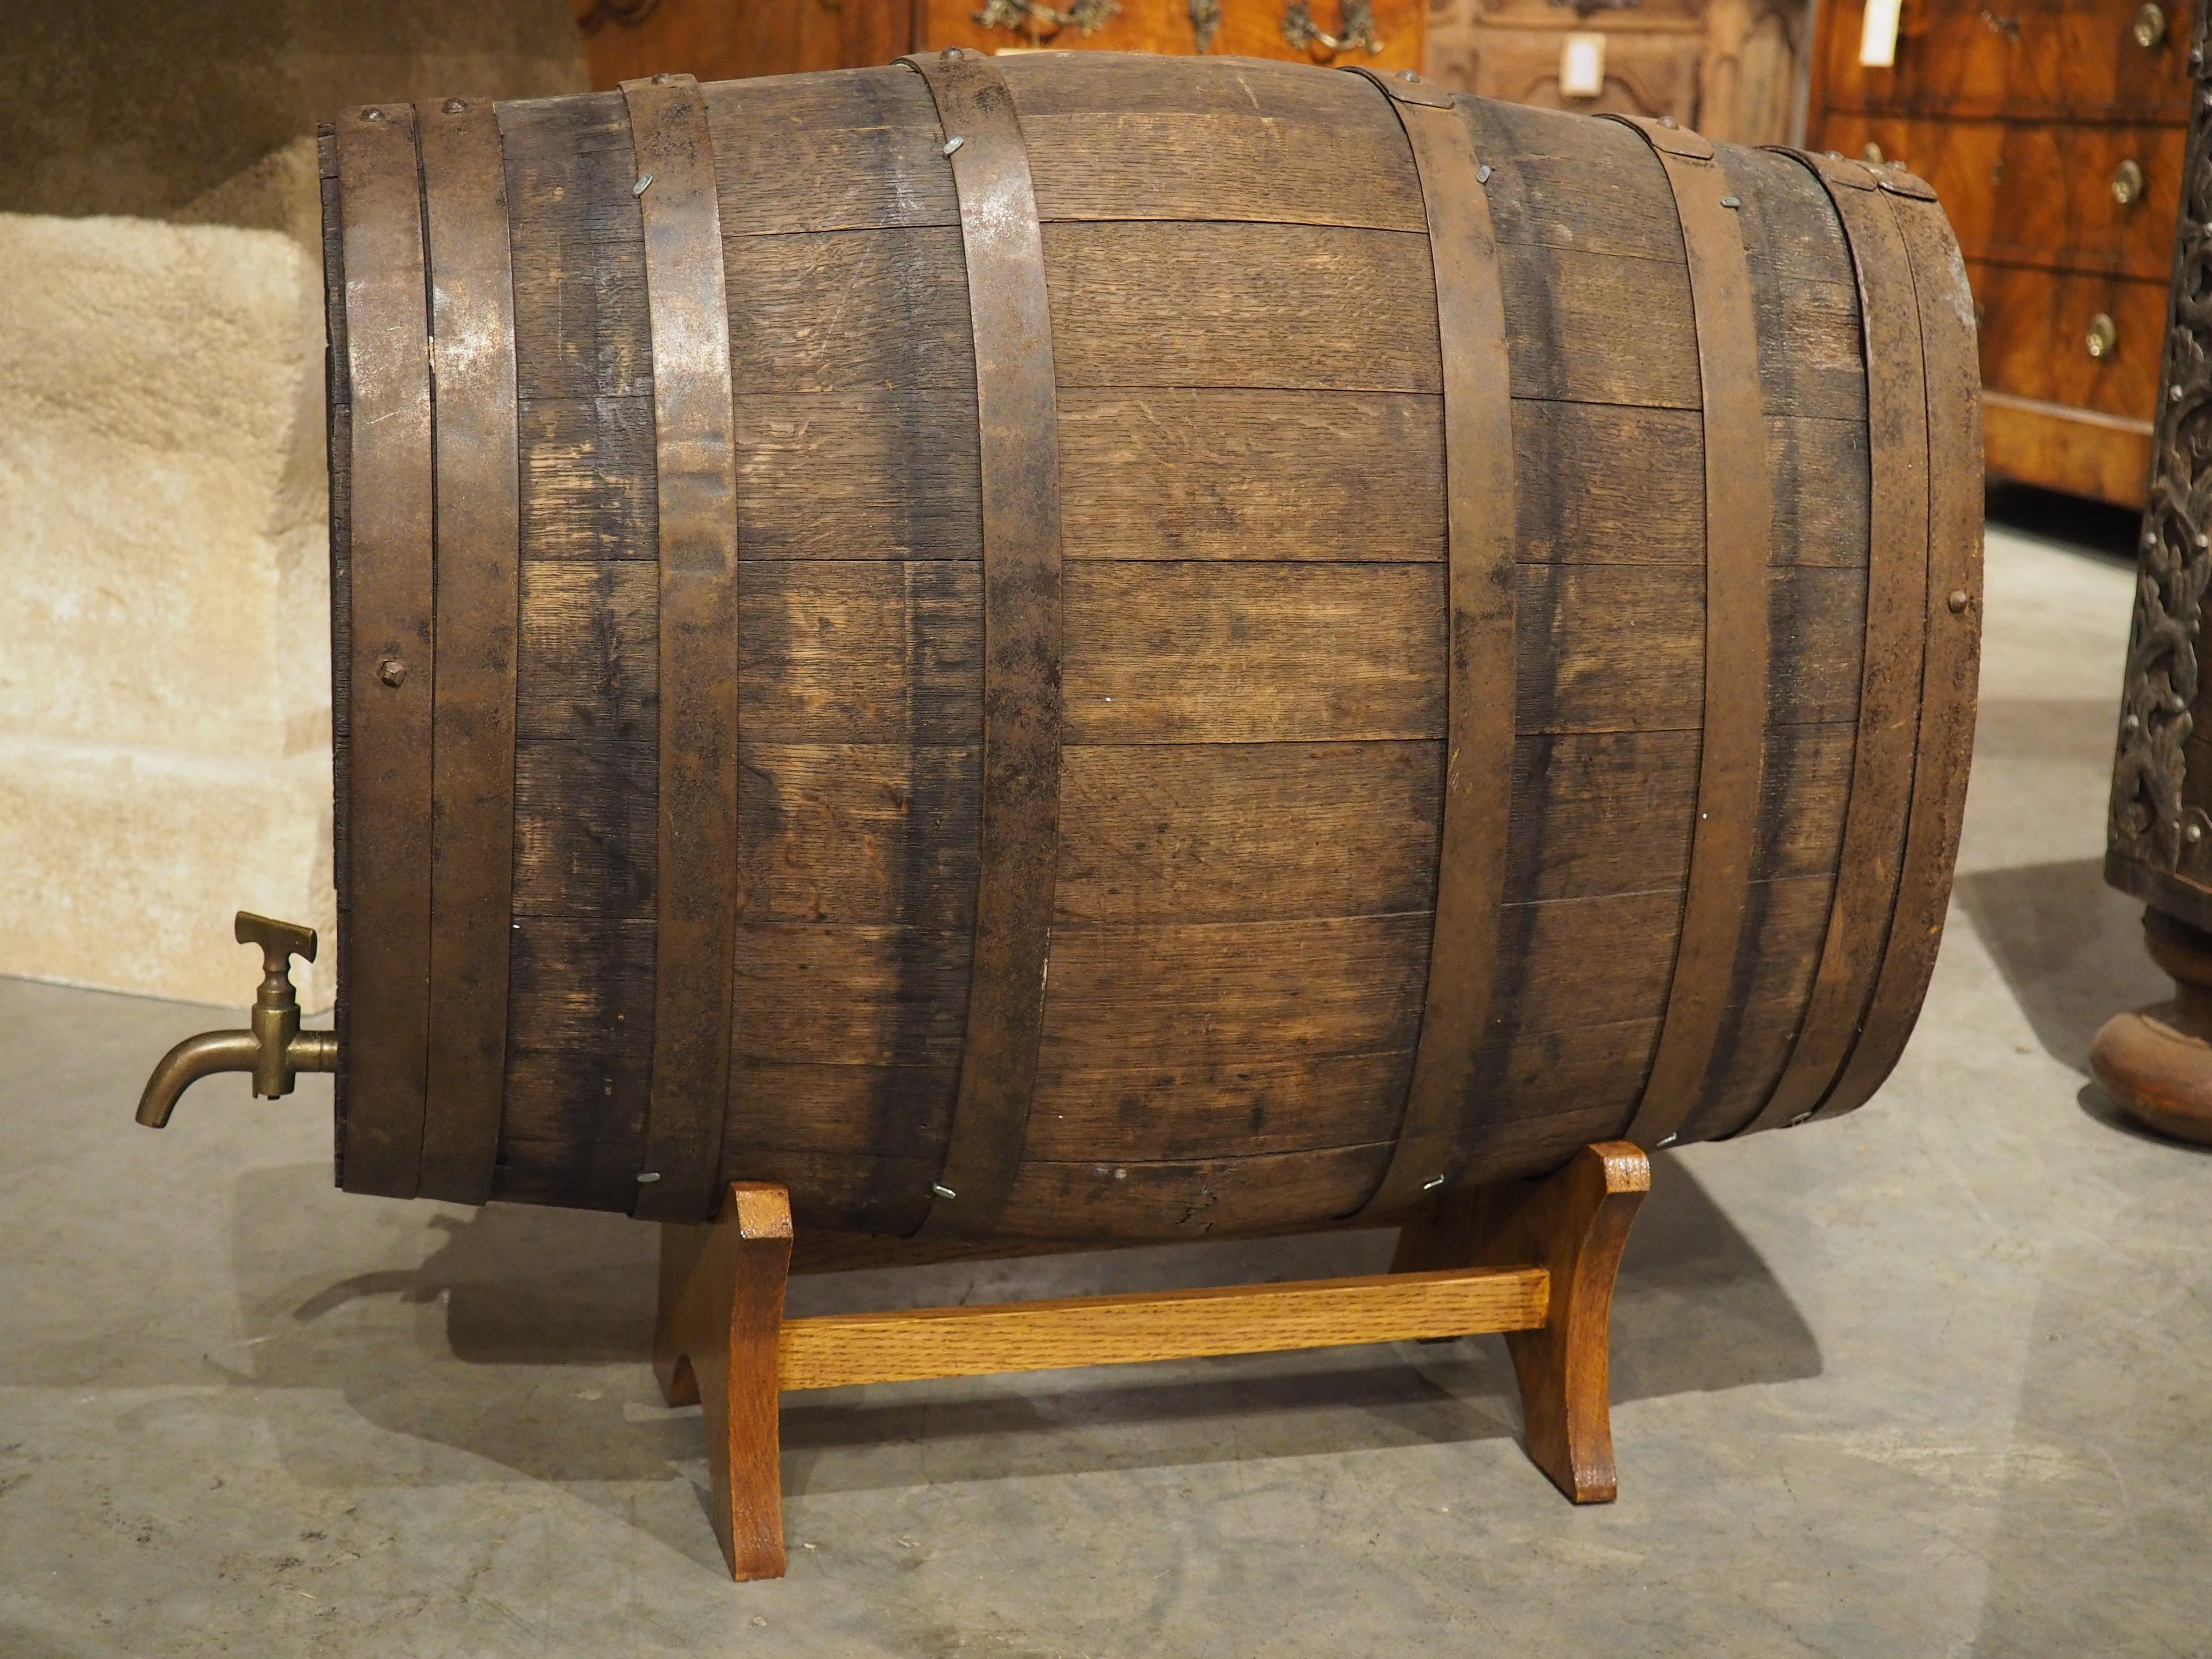 Imprescindible para cualquier amante del vino, este barril de roble para calvados fue tallado a mano en Francia, hacia 1850. El Calvados es un aguardiente de manzana y pera fabricado específicamente en Normandía, y el primer registro conocido de